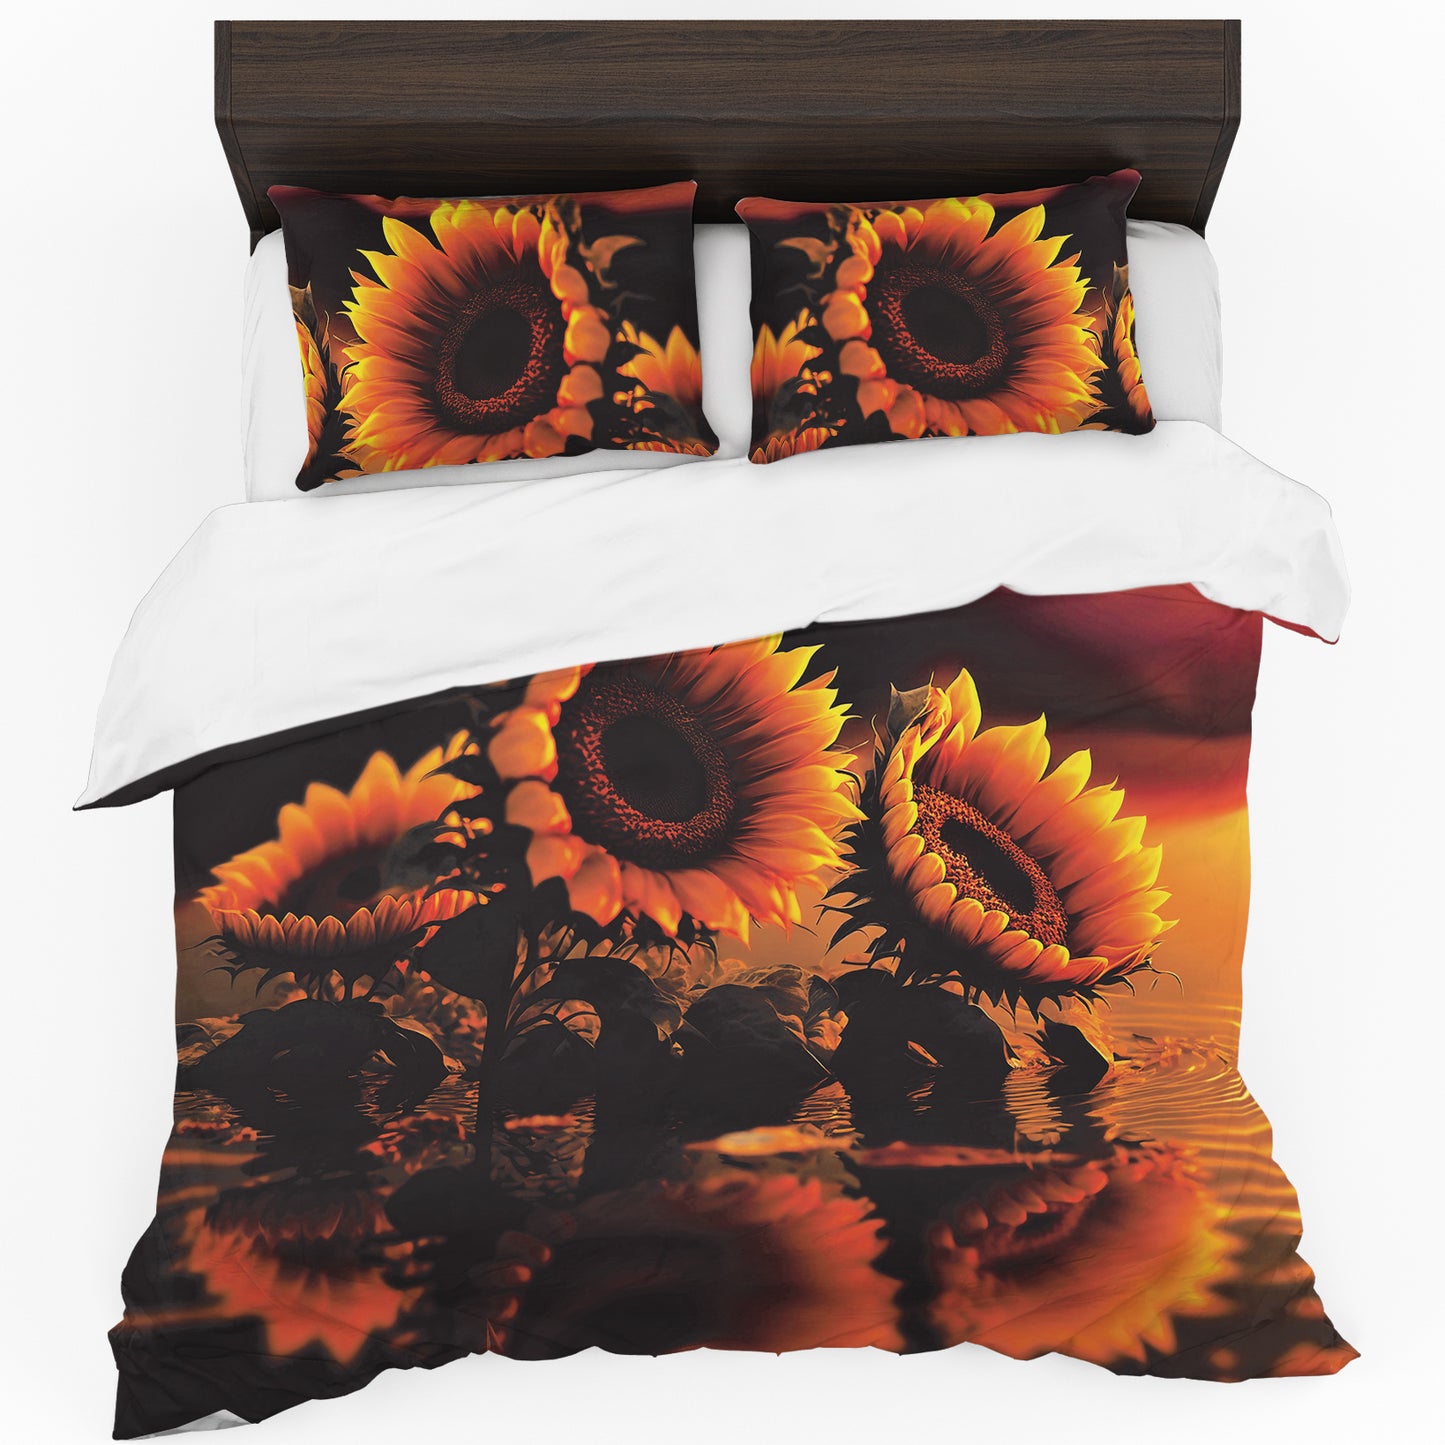 Sunflower Sunset Duvet Cover Set